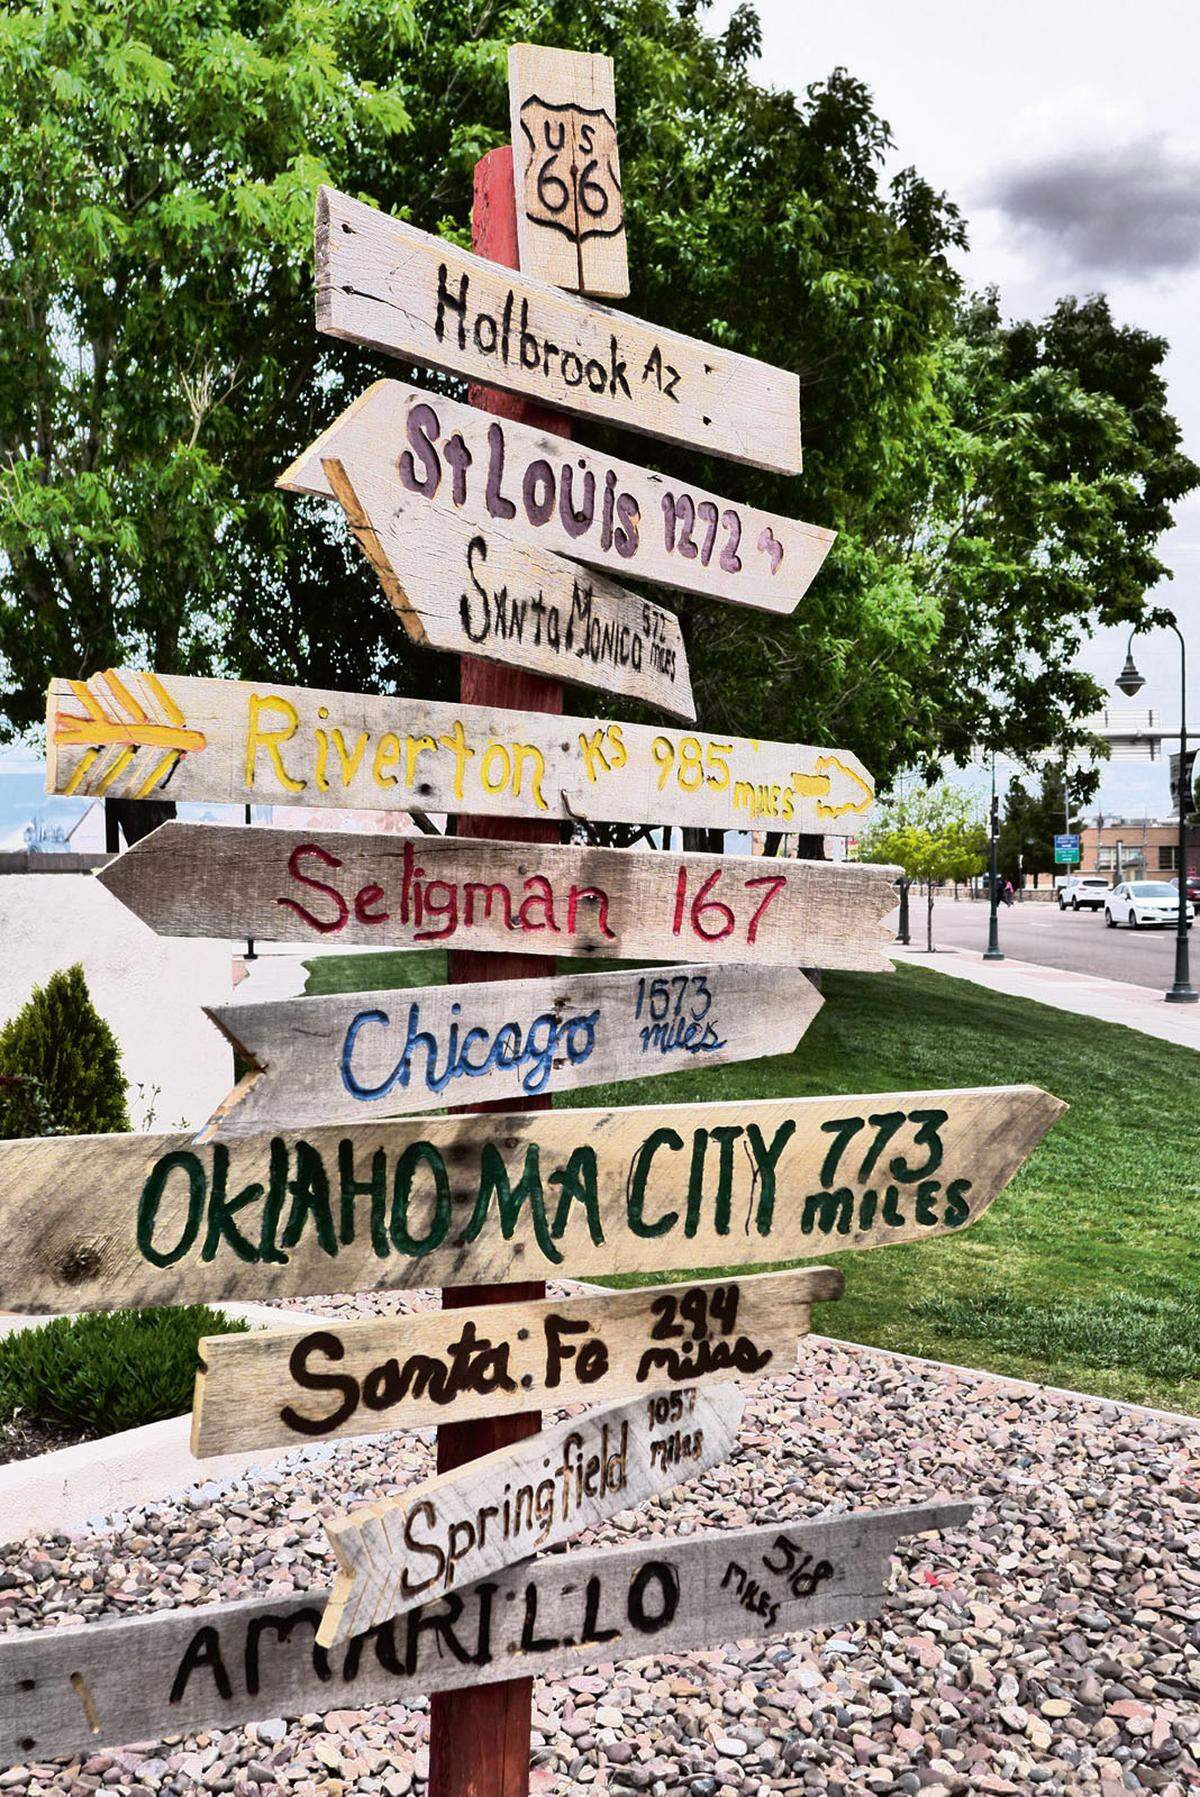 Das reizt On-the-road-Touristen und fasziniert Reiseautoren wie Freddy Langer, der die Route 66 in den letzten 30 Jahren immer wieder befahren und an ihren Seiten auch eine Zeit lang gewohnt hat. Im Bild: Eine Straße, viele Destinationen. Wegweiser in Holbrook, Arizona.